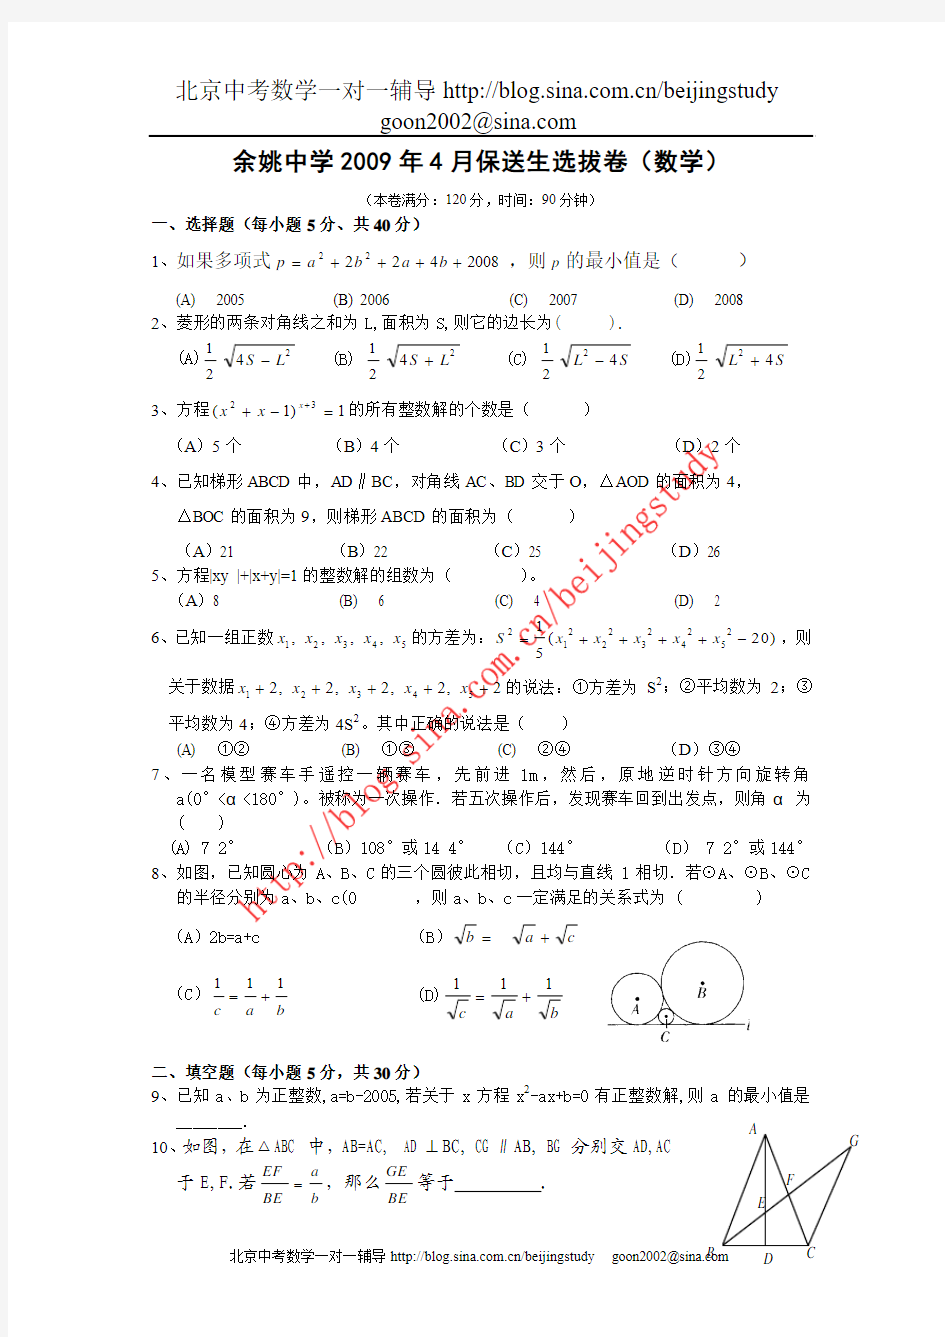 2009年浙江余姚中学保送生选拨数学试卷(附答案)